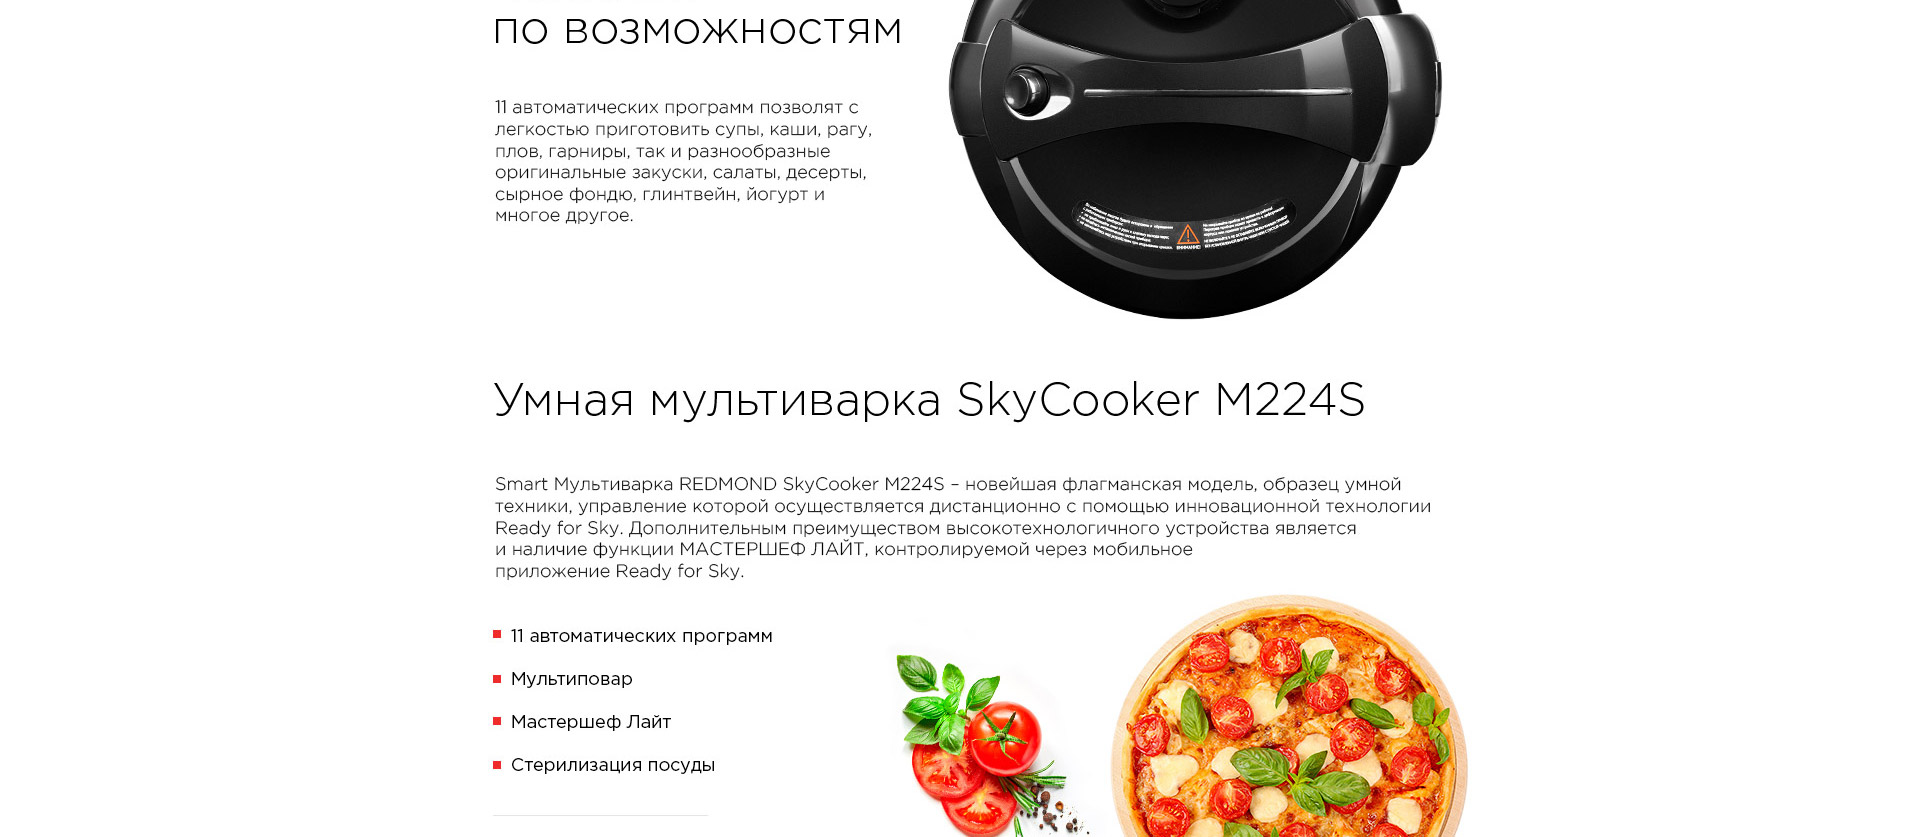 Умная мультиварка REDMOND SkyCooker M224S